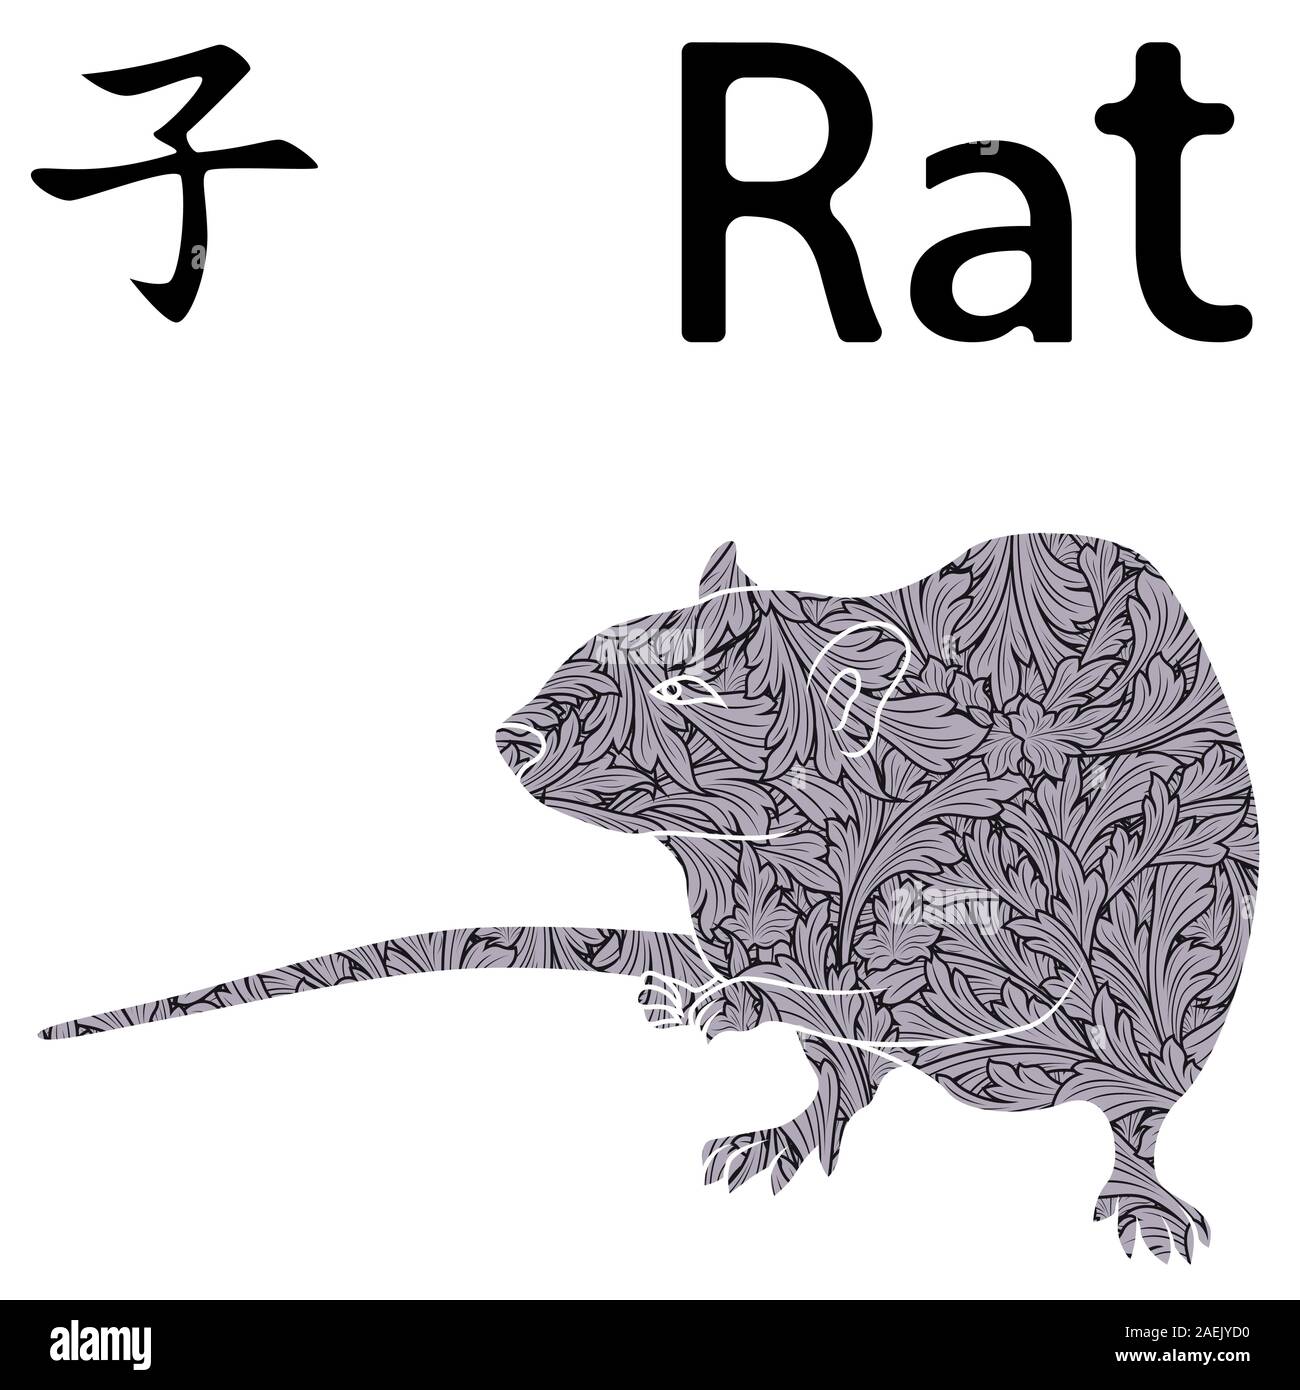 Signe zodiacal chinois Rat, symbole de la nouvelle année sur le calendrier oriental, scénario avec pochoir feuilles monochrome isolé sur fond blanc Illustration de Vecteur